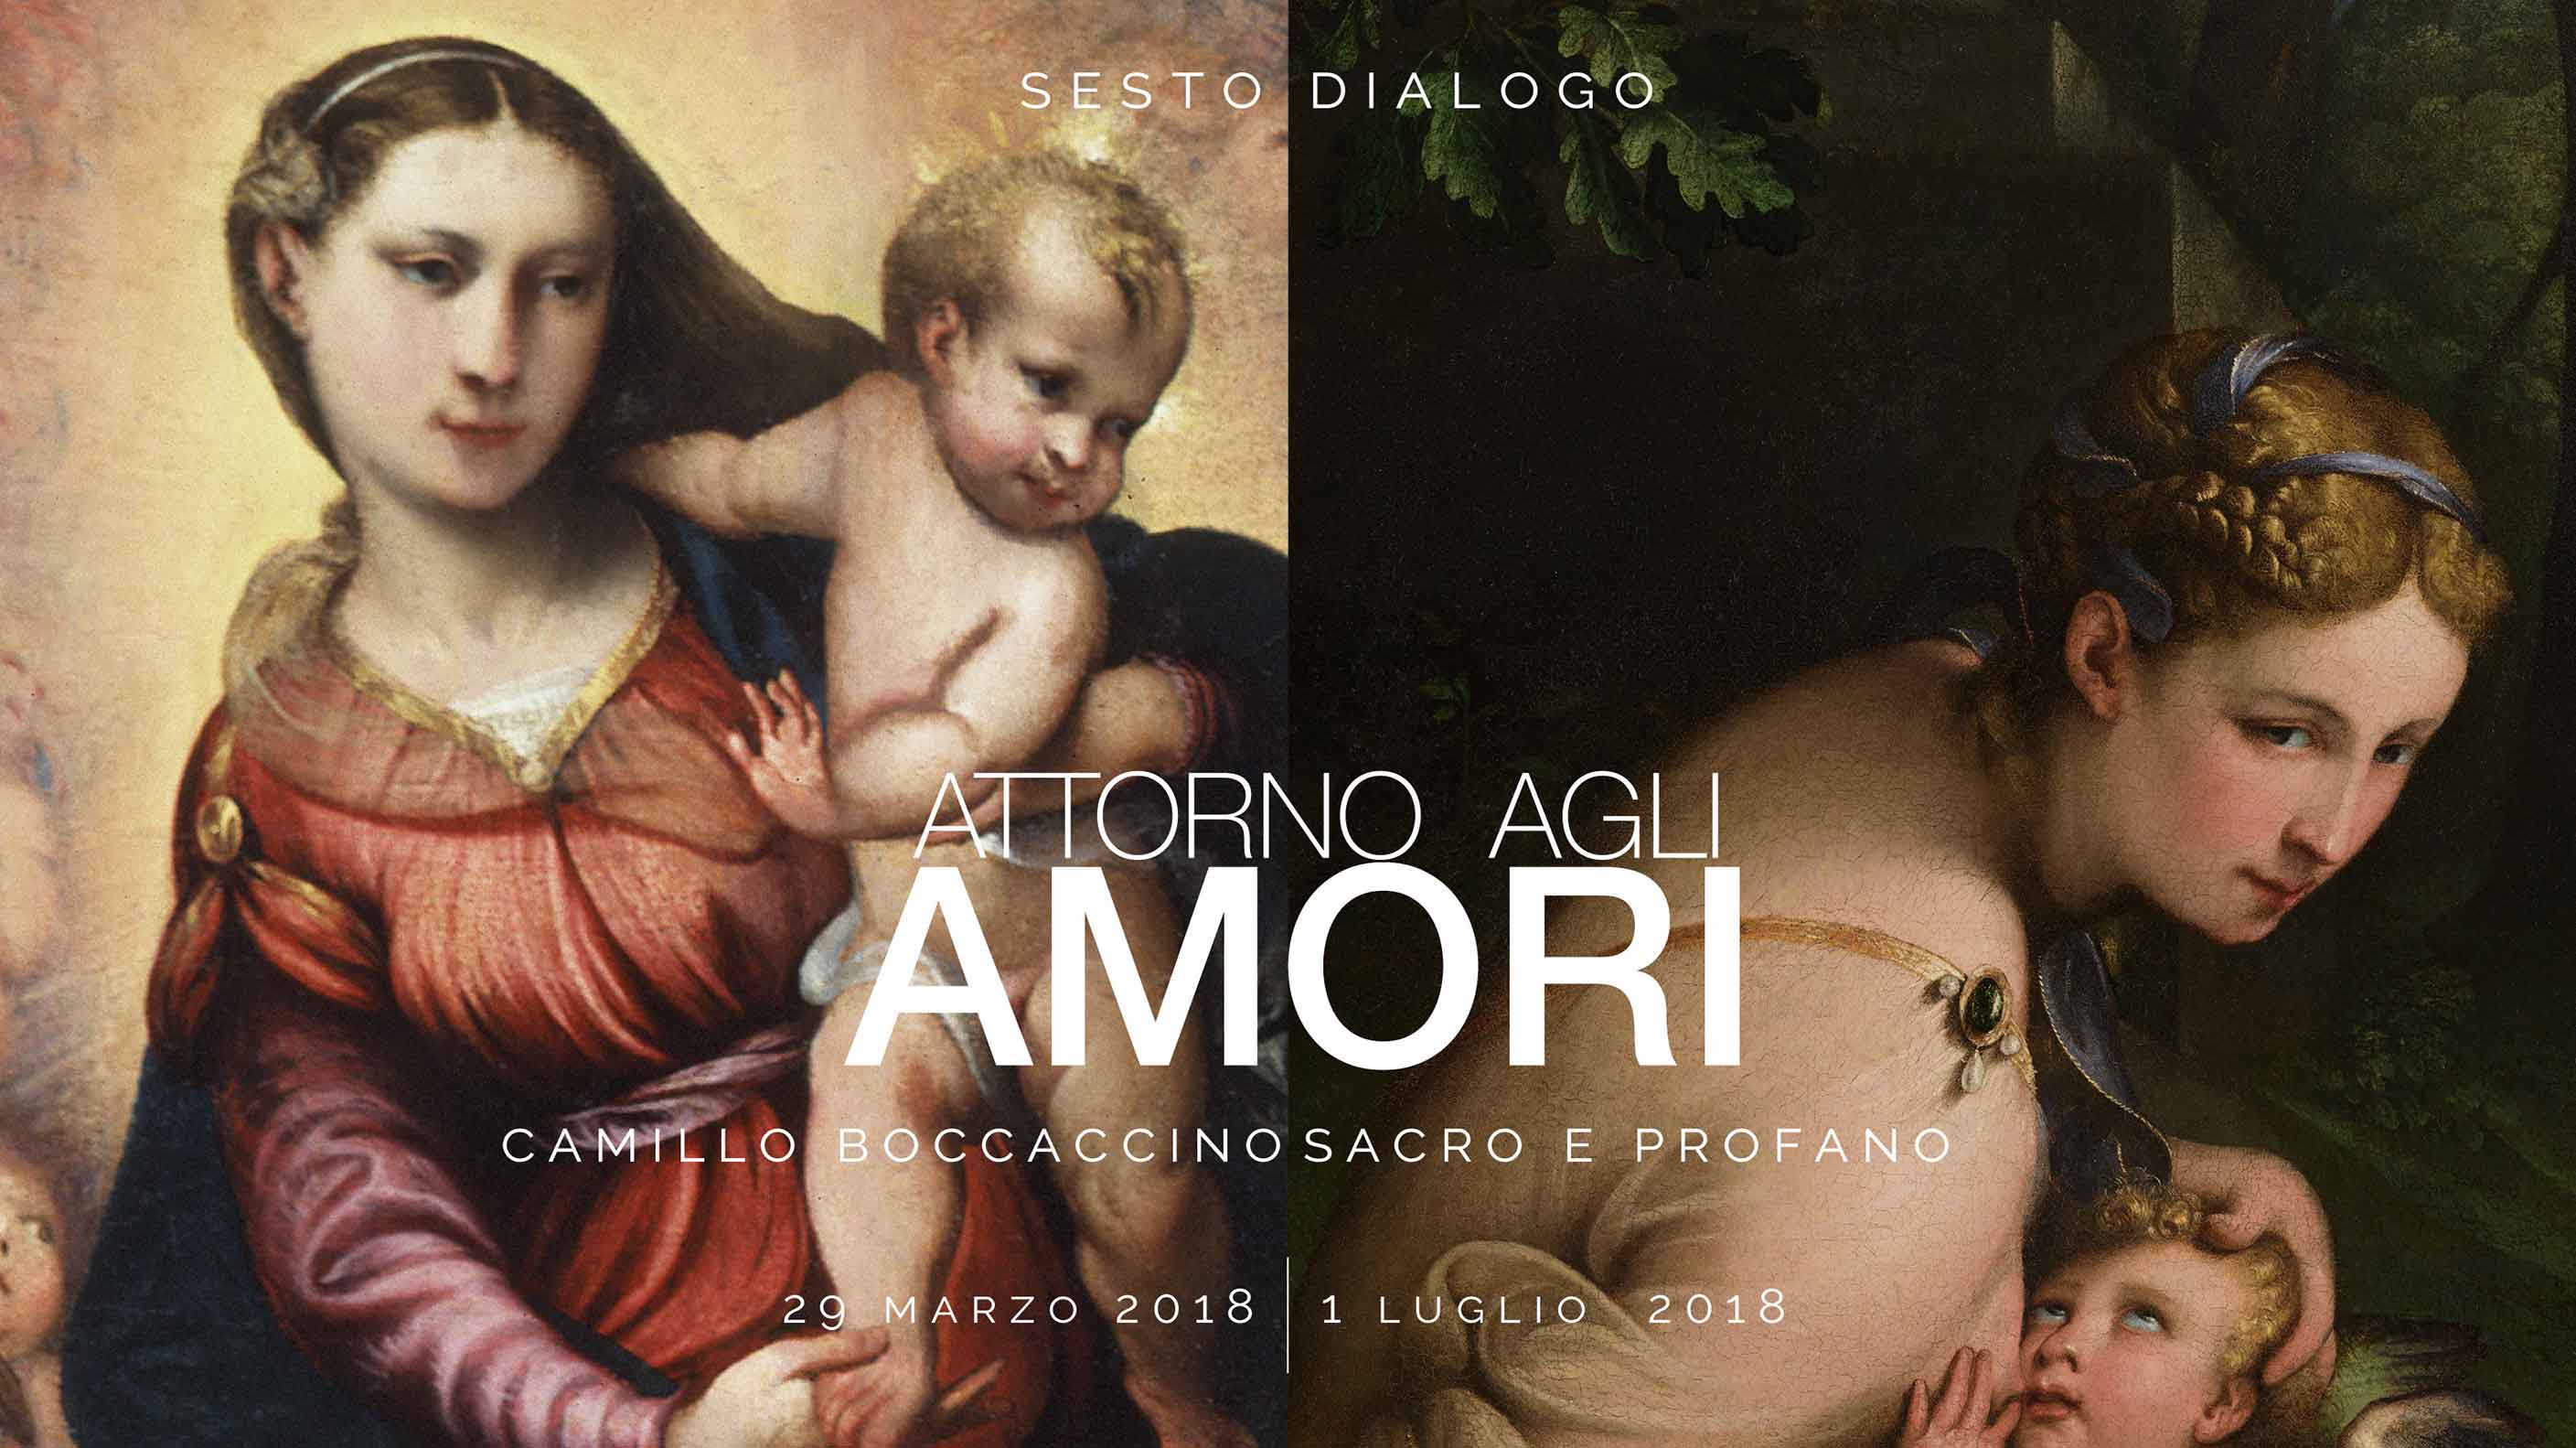 Sesto dialogo “Attorno agli Amori. Camillo Boccaccino, sacro e profano” | video teaser